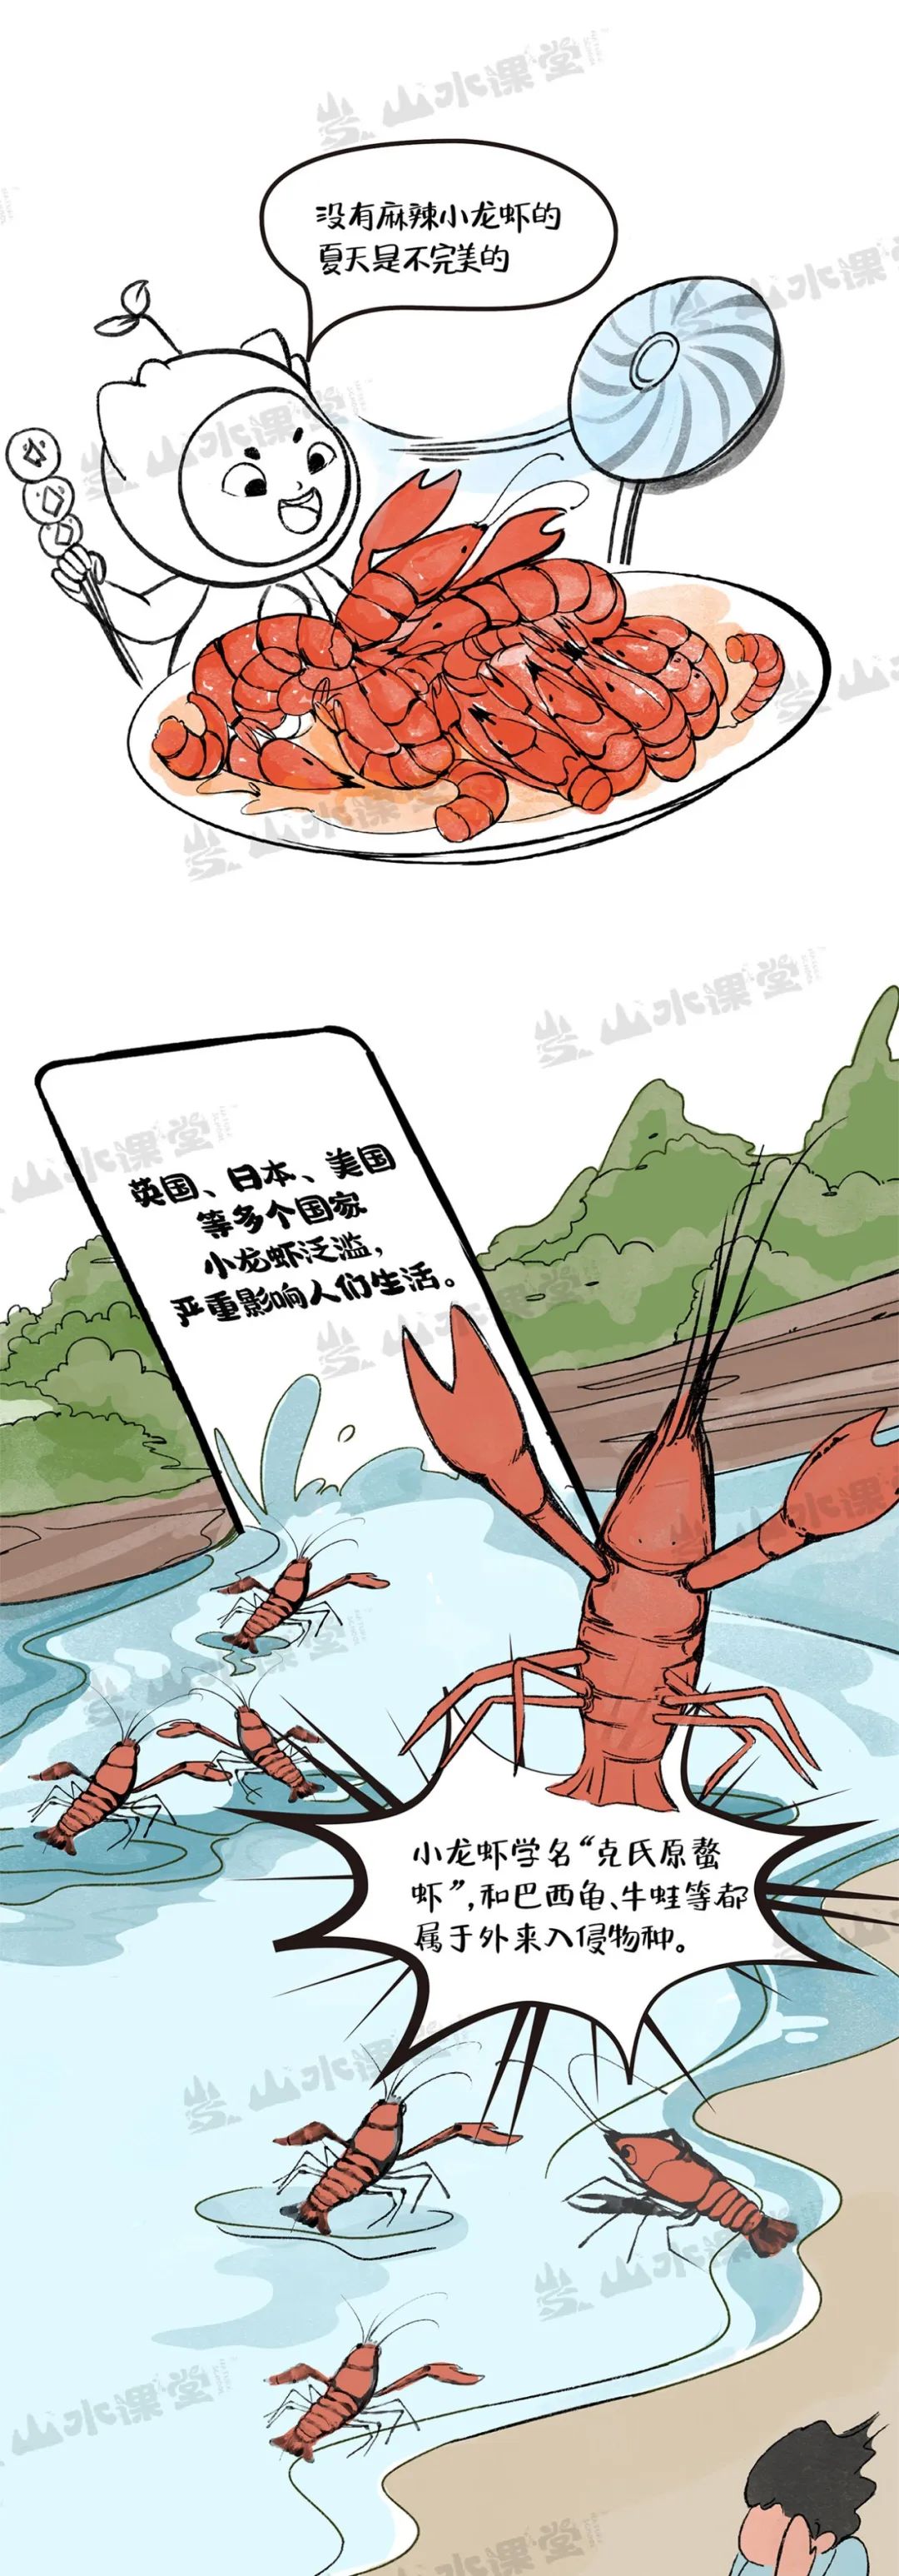 图解漫画 | 长江流域小龙虾的“利”与“害”，一吃可解否？